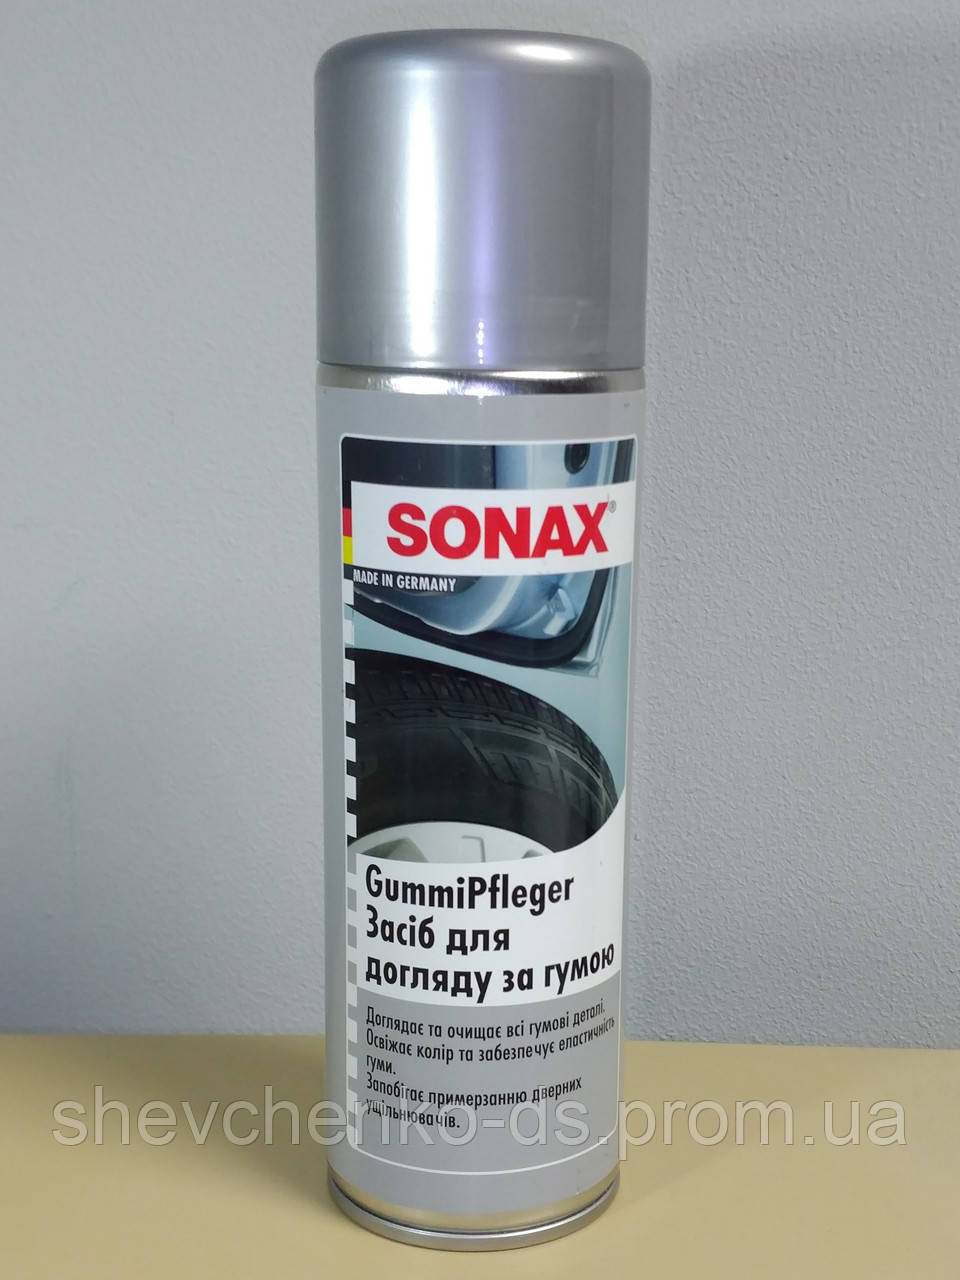 Засіб для догляду за гумою Sonax GummiPfleger аерозо. 300 мл